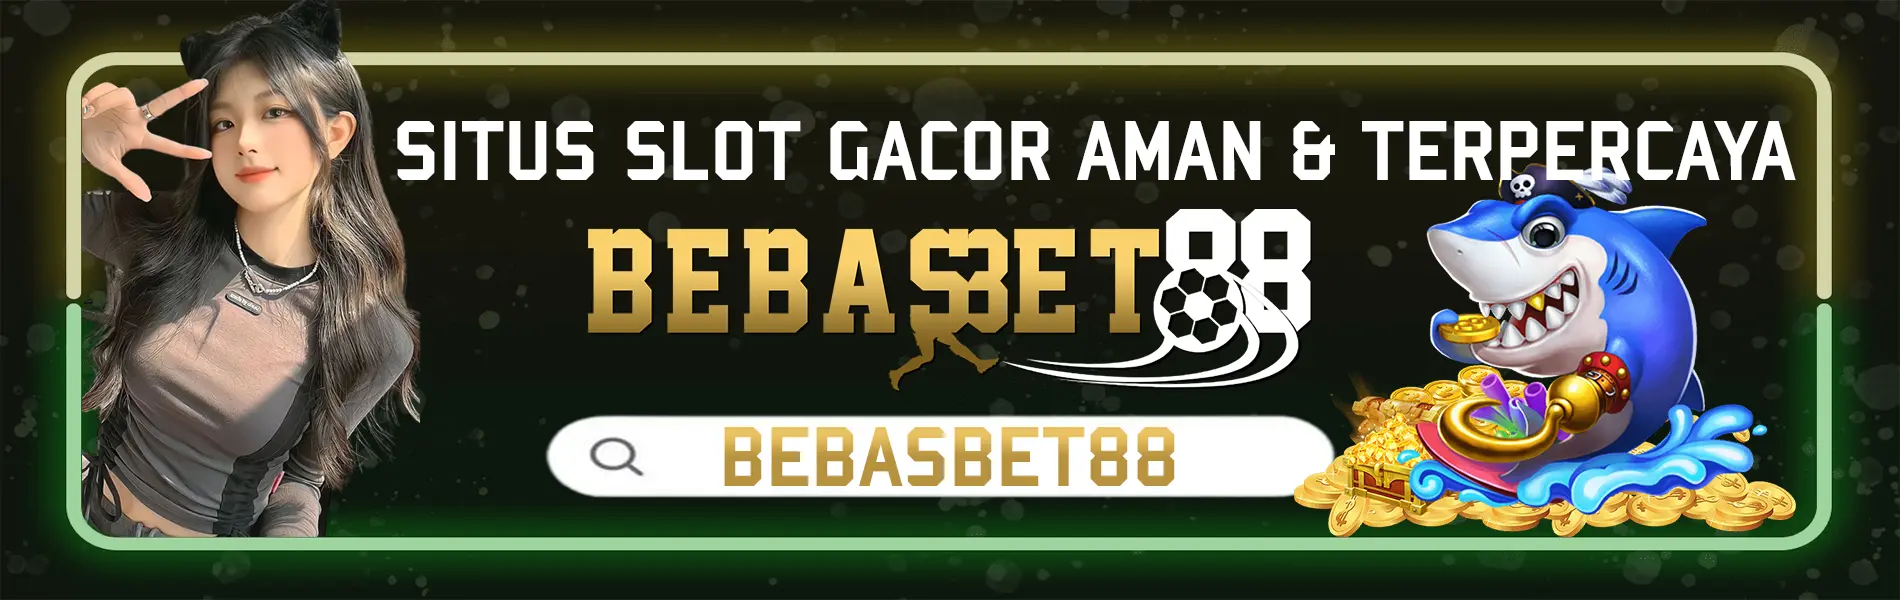 Bebasbet88